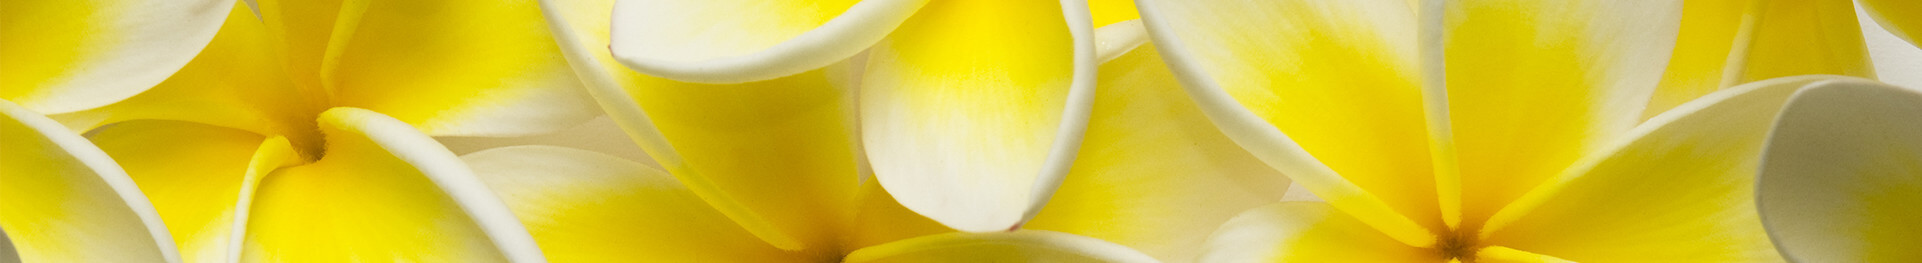 積み上げられた黄色いルメリアの花